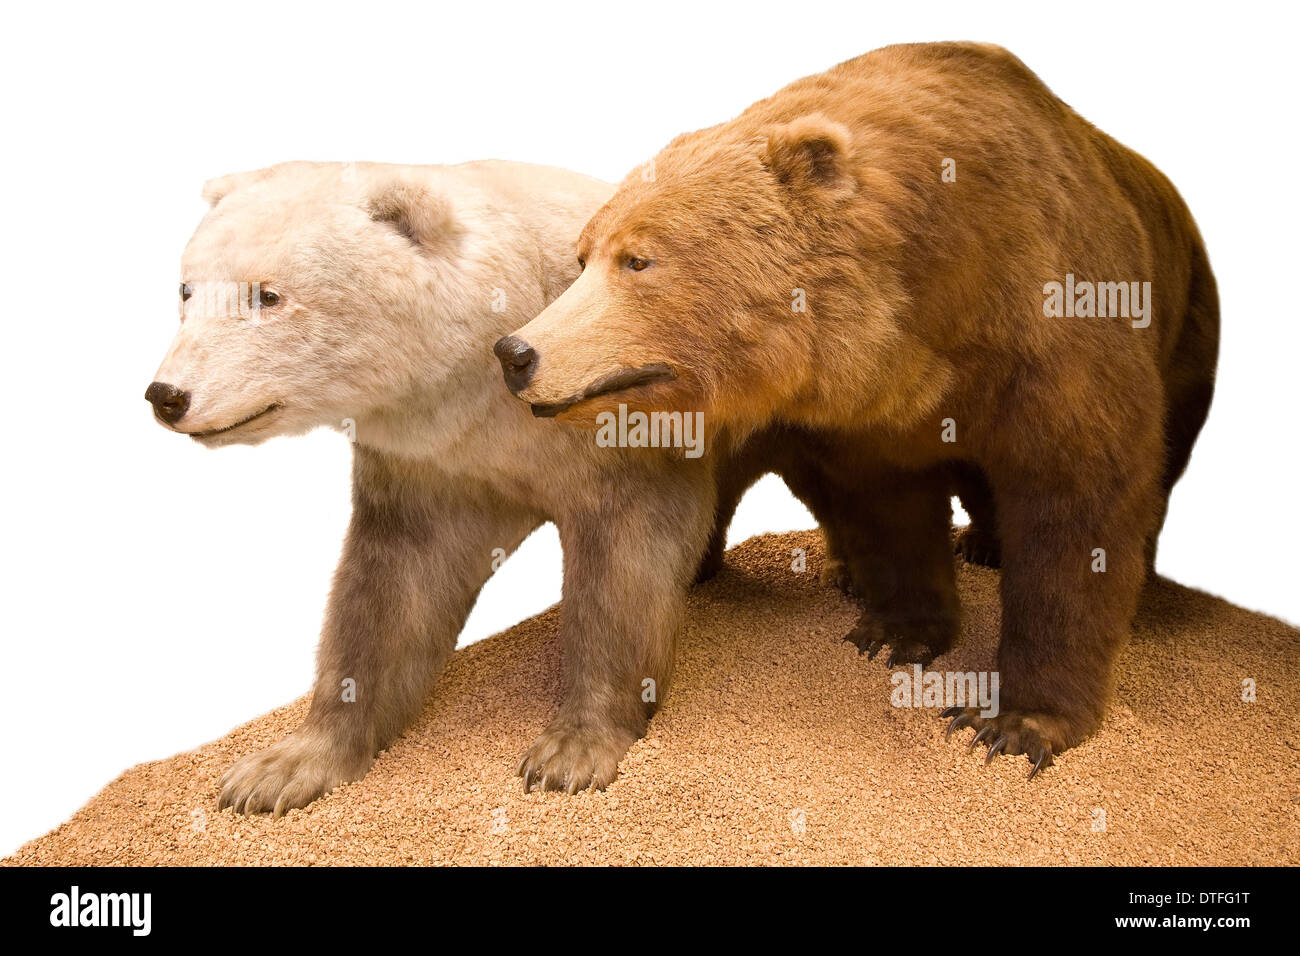 Polar bear- Grizzly bear hybrid Stock Photo